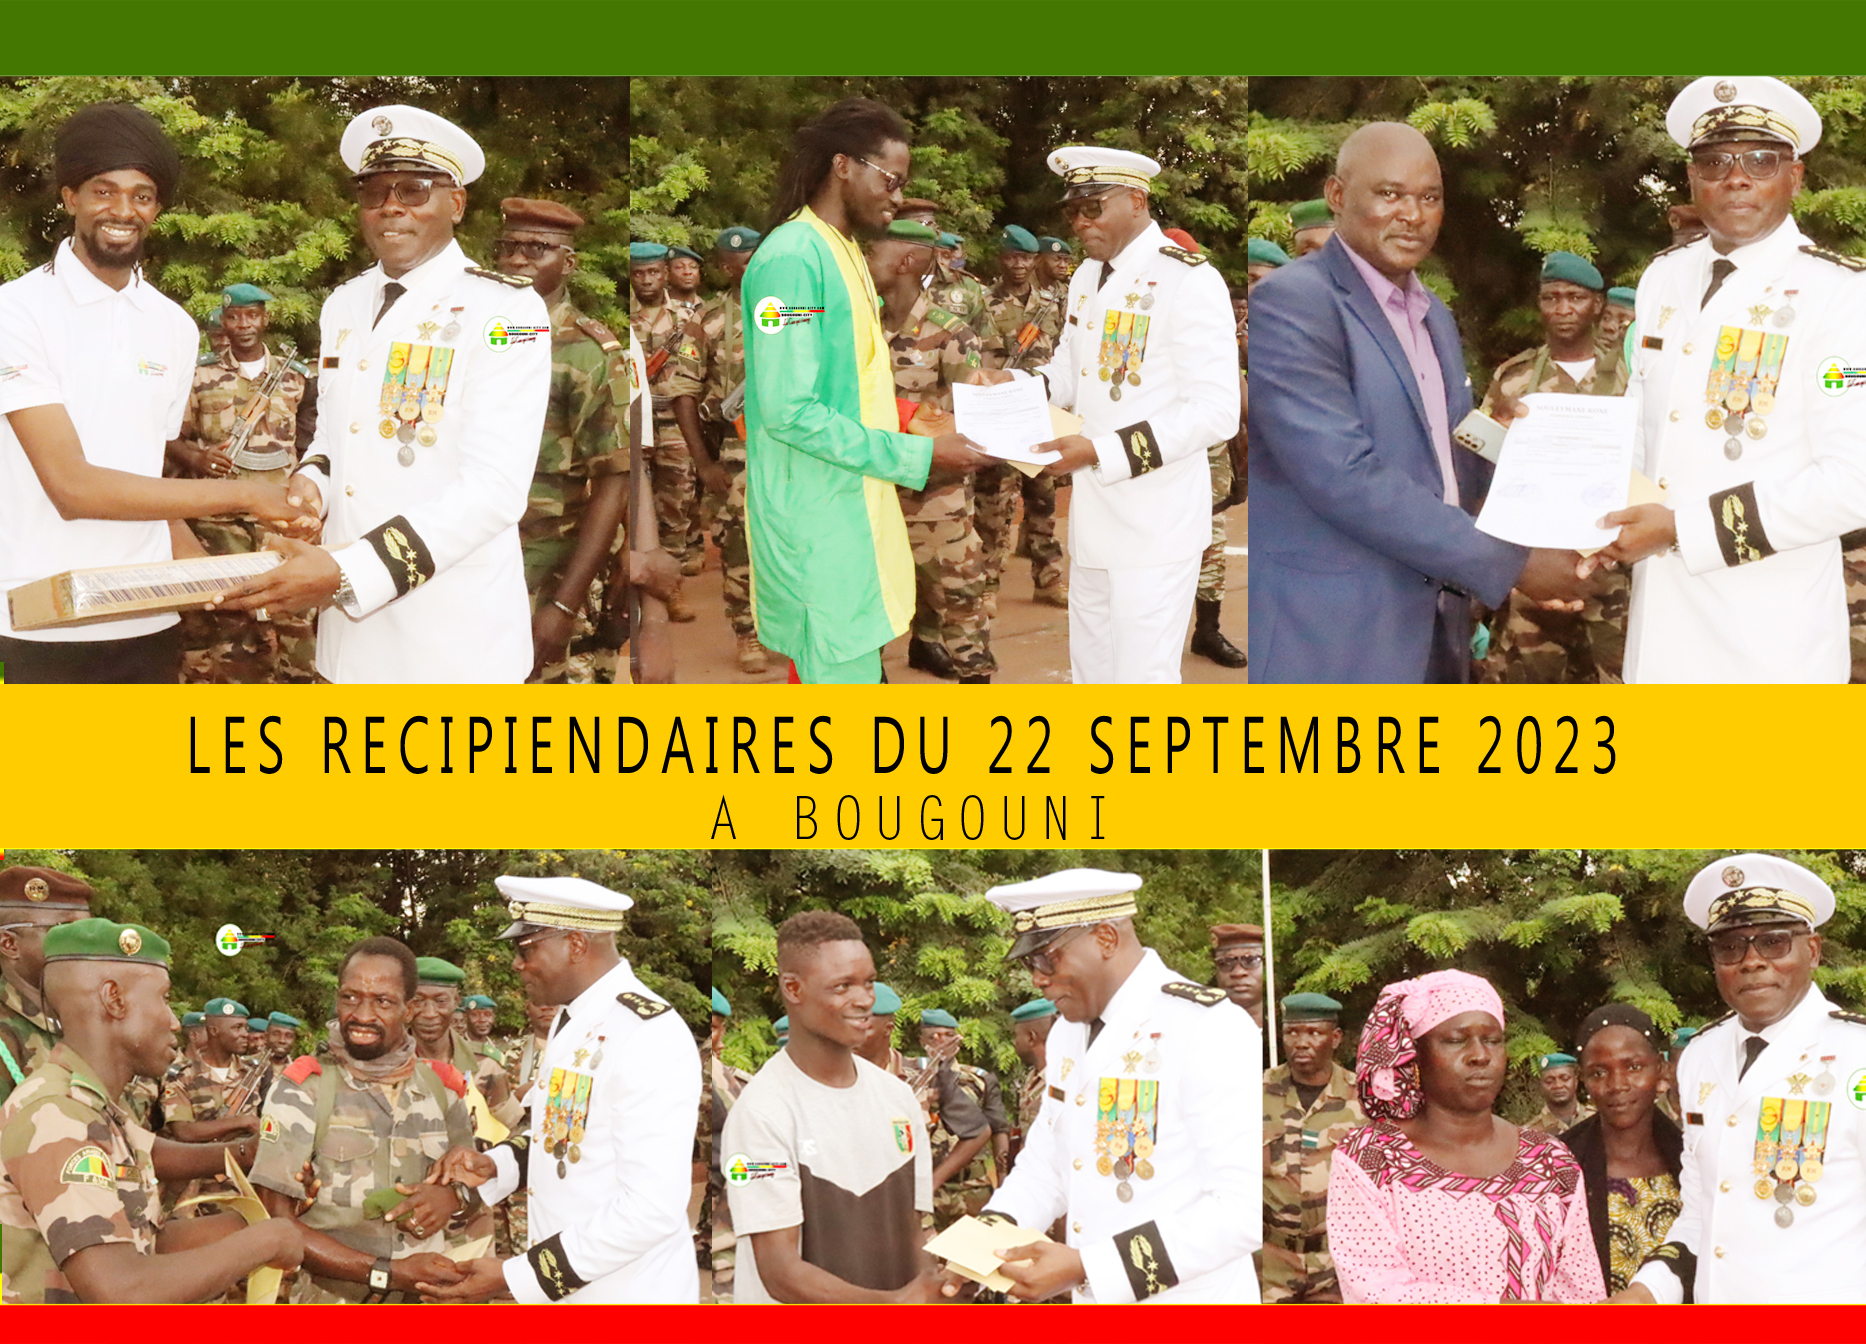 Général de brigade Keba SANGARE gouverneur de la région de Bougouni offre une moto et un ordinateur portable à BougouniCity.